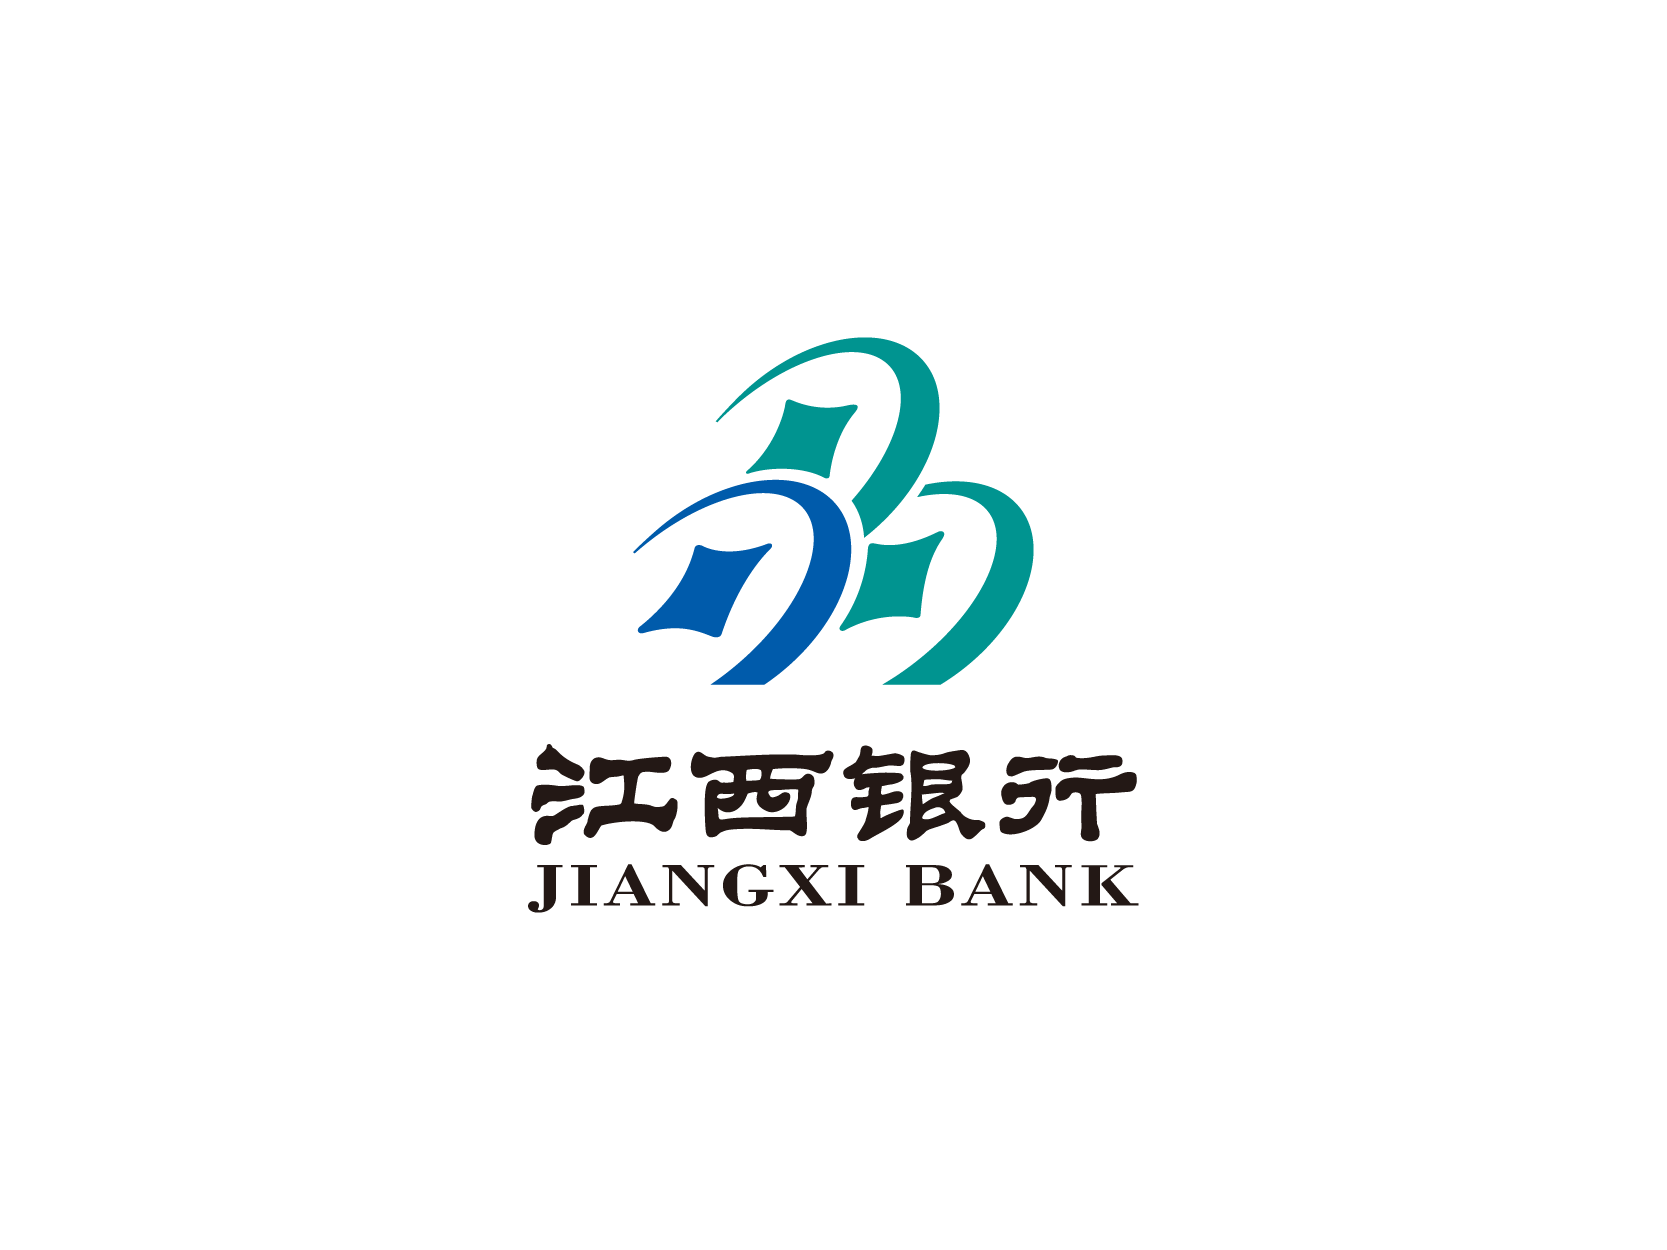 江西银行标志logo设计